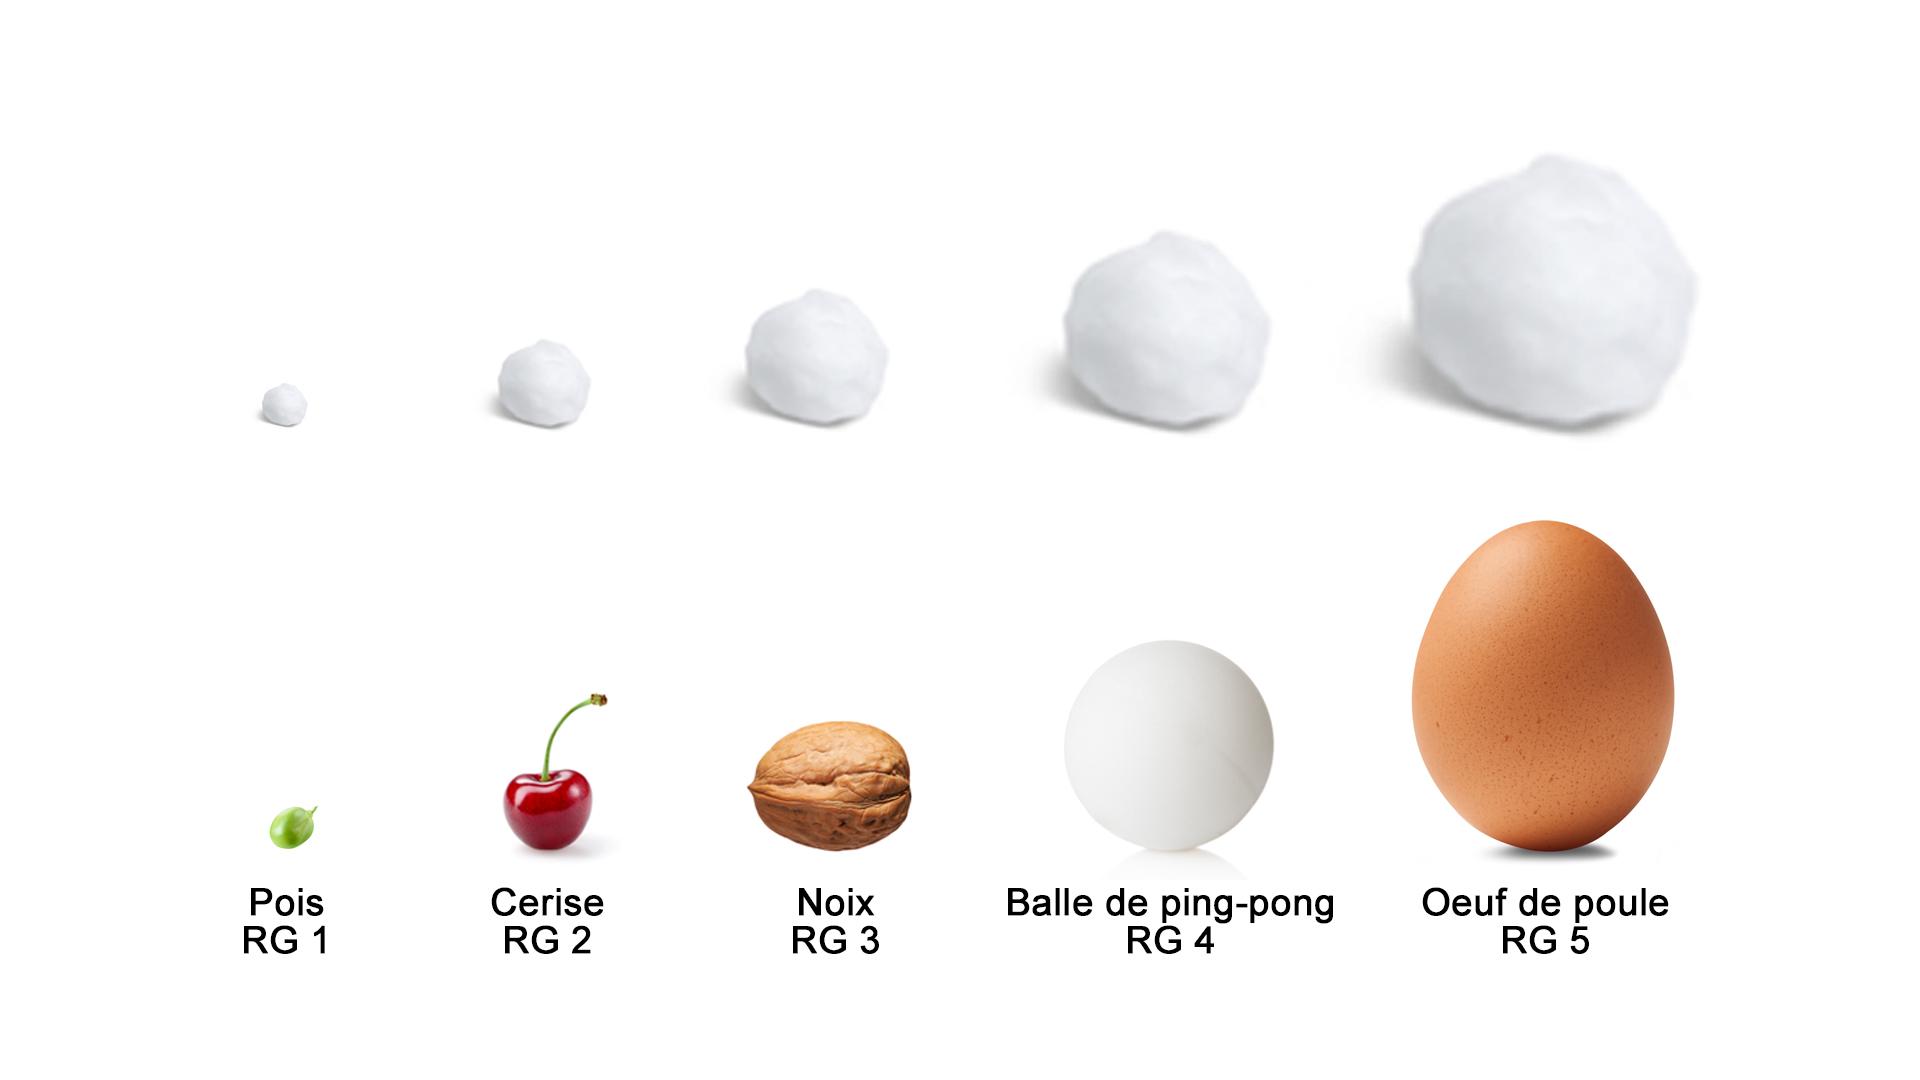 Comparaison de la taille des grêlons avec celle des petits pois, des cerises, des noix, des balles de ping-pong et des œufs de poule.